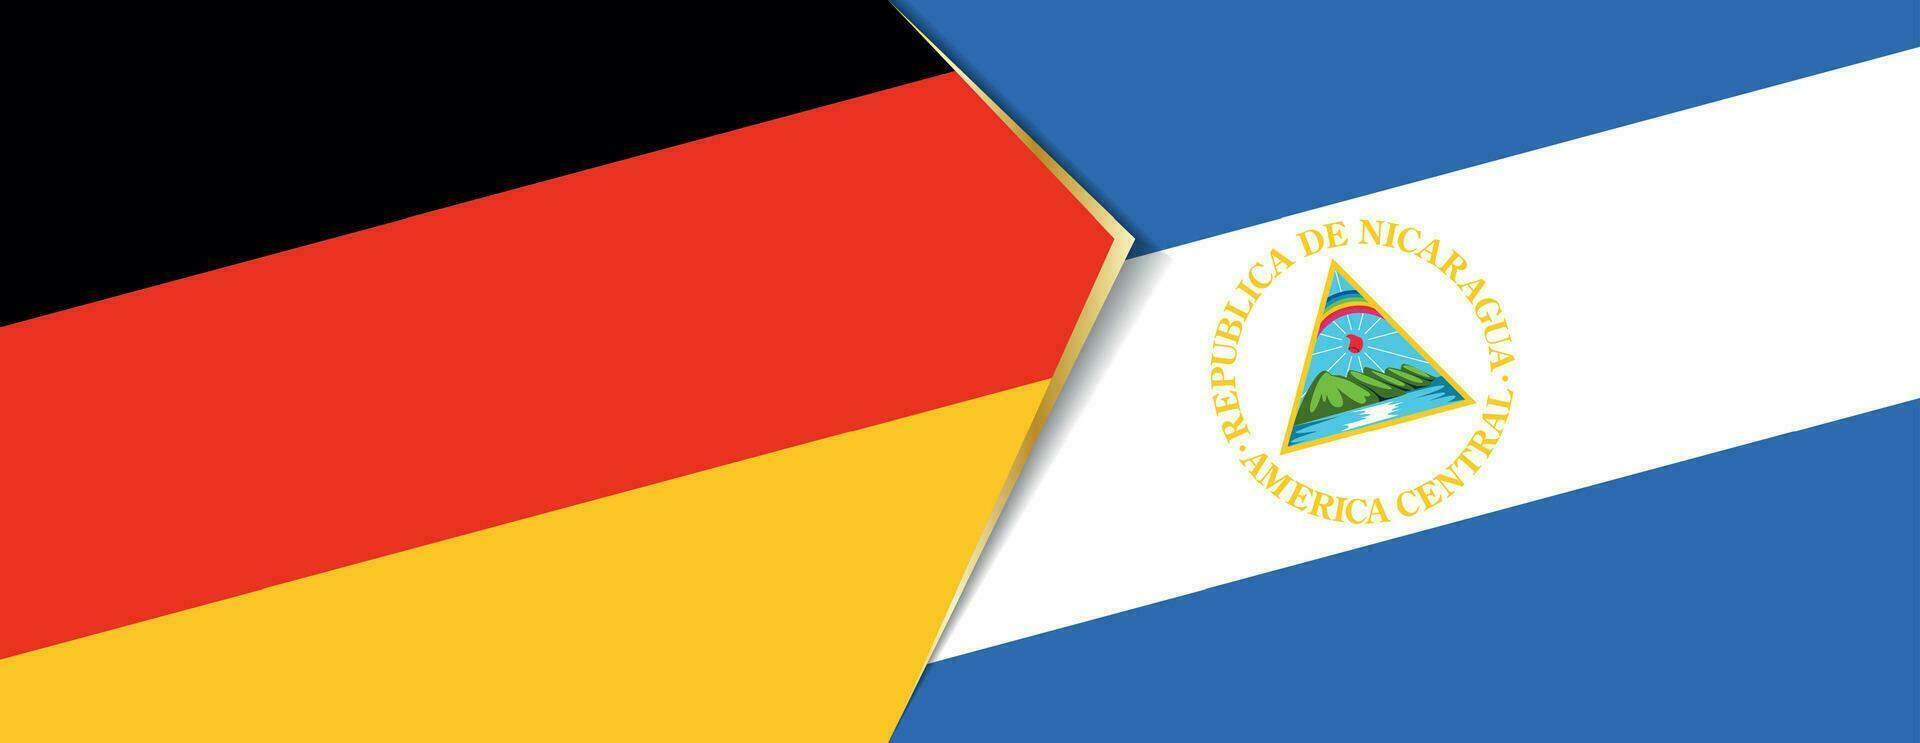 Germania e Nicaragua bandiere, Due vettore bandiere.